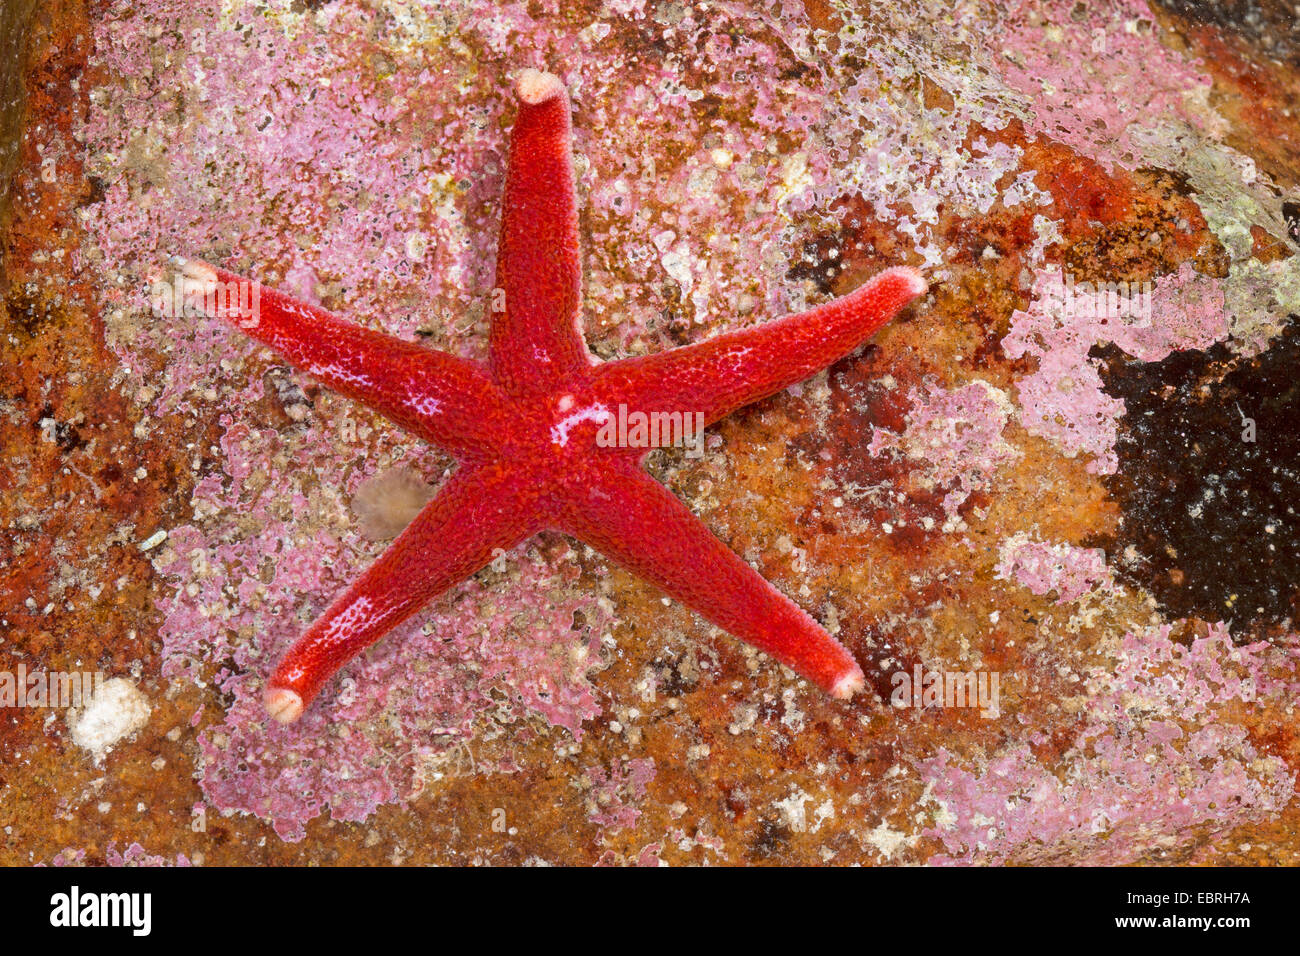 Le sang de l'Atlantique, étoile de mer Étoile Polaire Fine, élancée, étoile de mer étoile de sang, Henry sanglante, Nord de l'étoile de sang, Henricia (Henricia spec., Henricia spec.), vue du dessus Banque D'Images